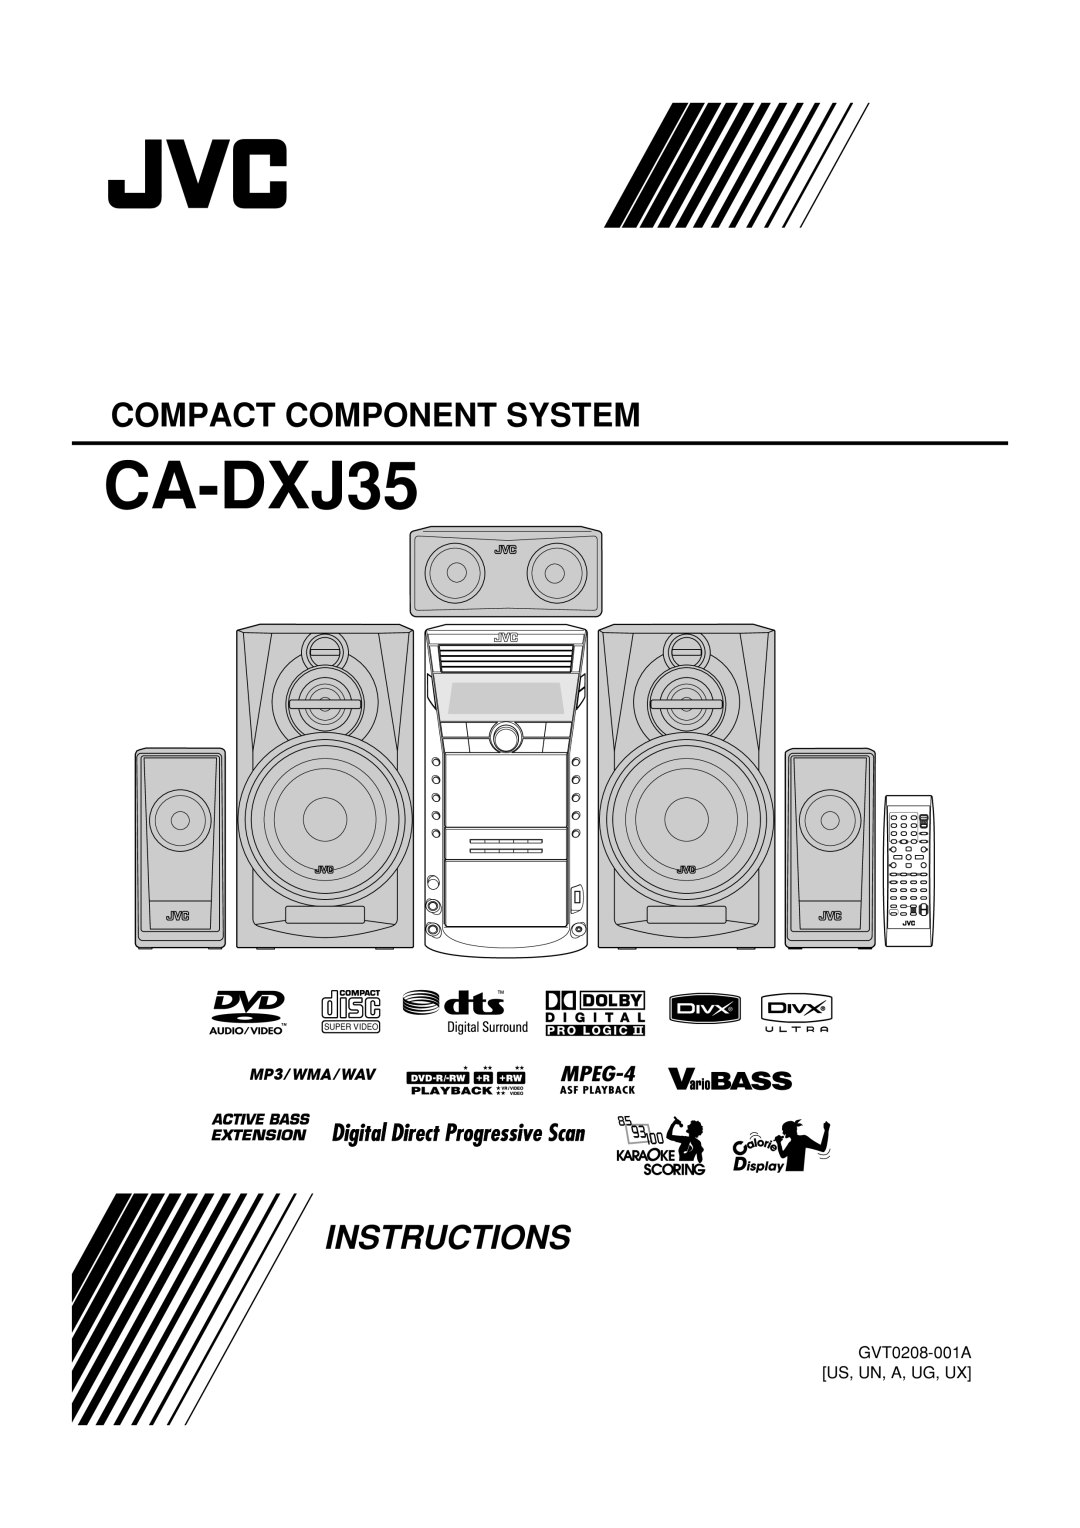 JVC CA-DXJ35 manual Compact Component System, Instructions, GVT0208-001AUS, UN, A, UG, UX, Super Video 